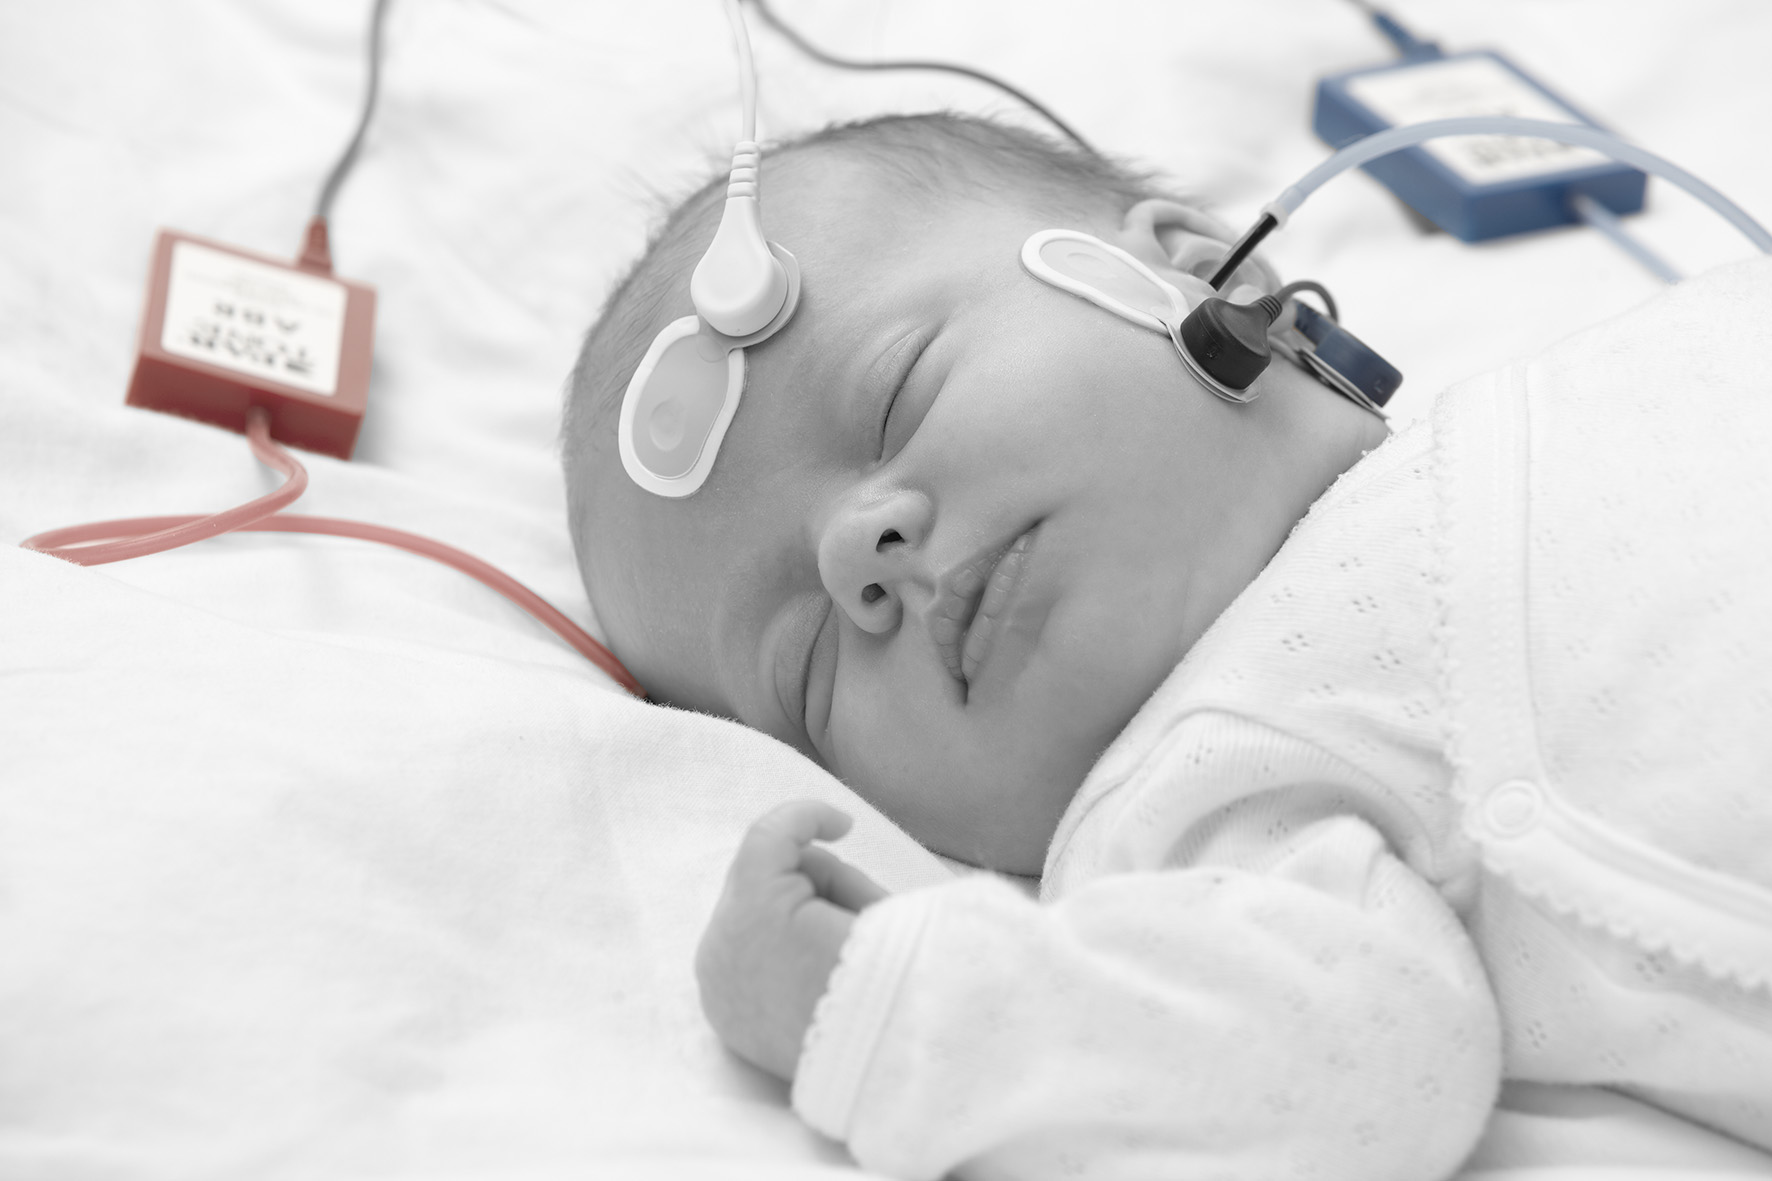 AABR newborn hearing screening